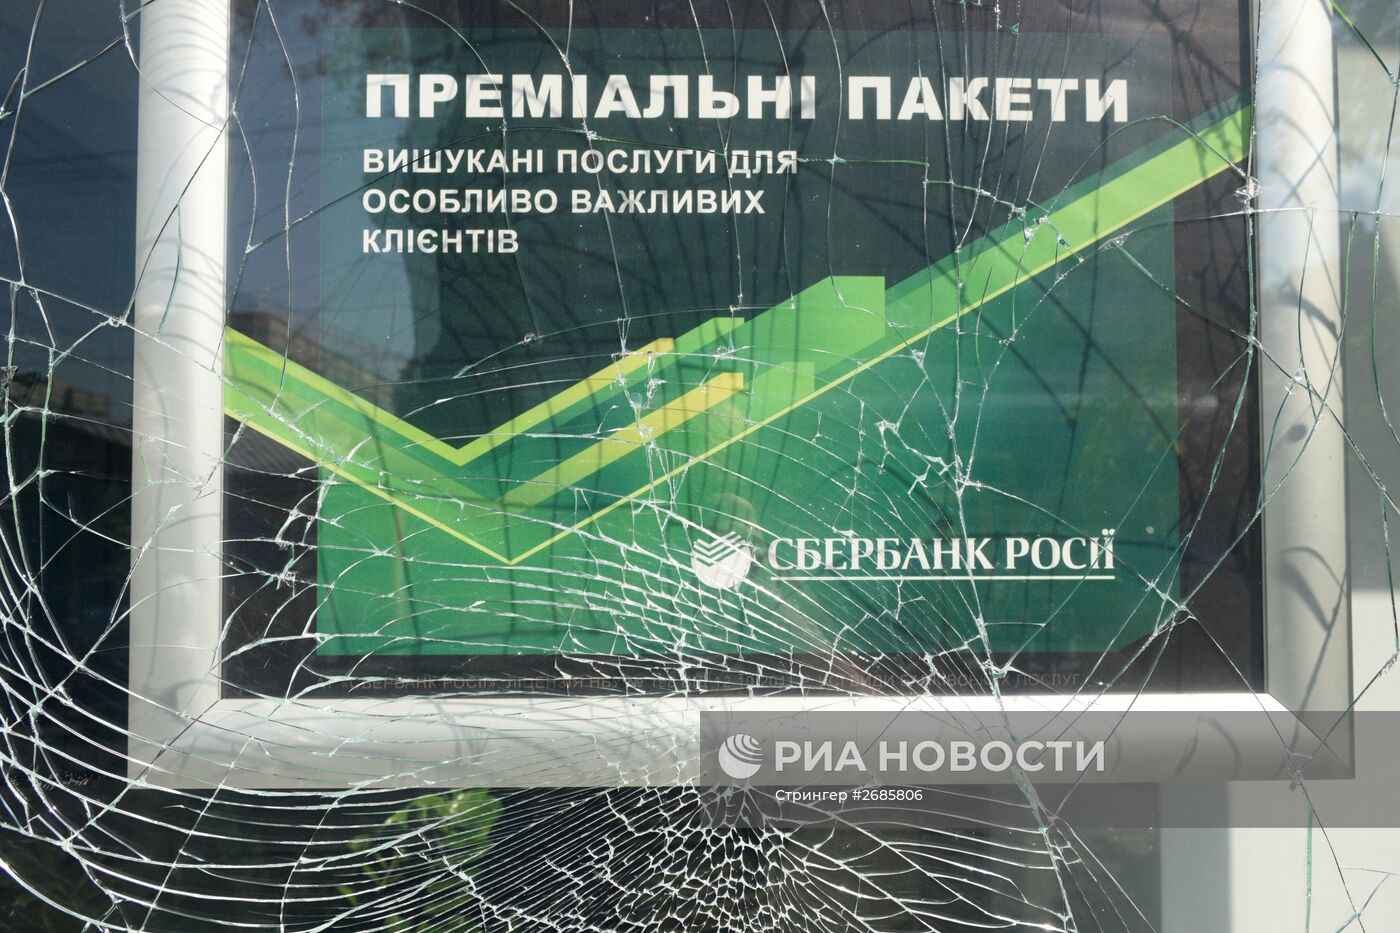 Отделение "Сбербанка России" пострадало в Киеве